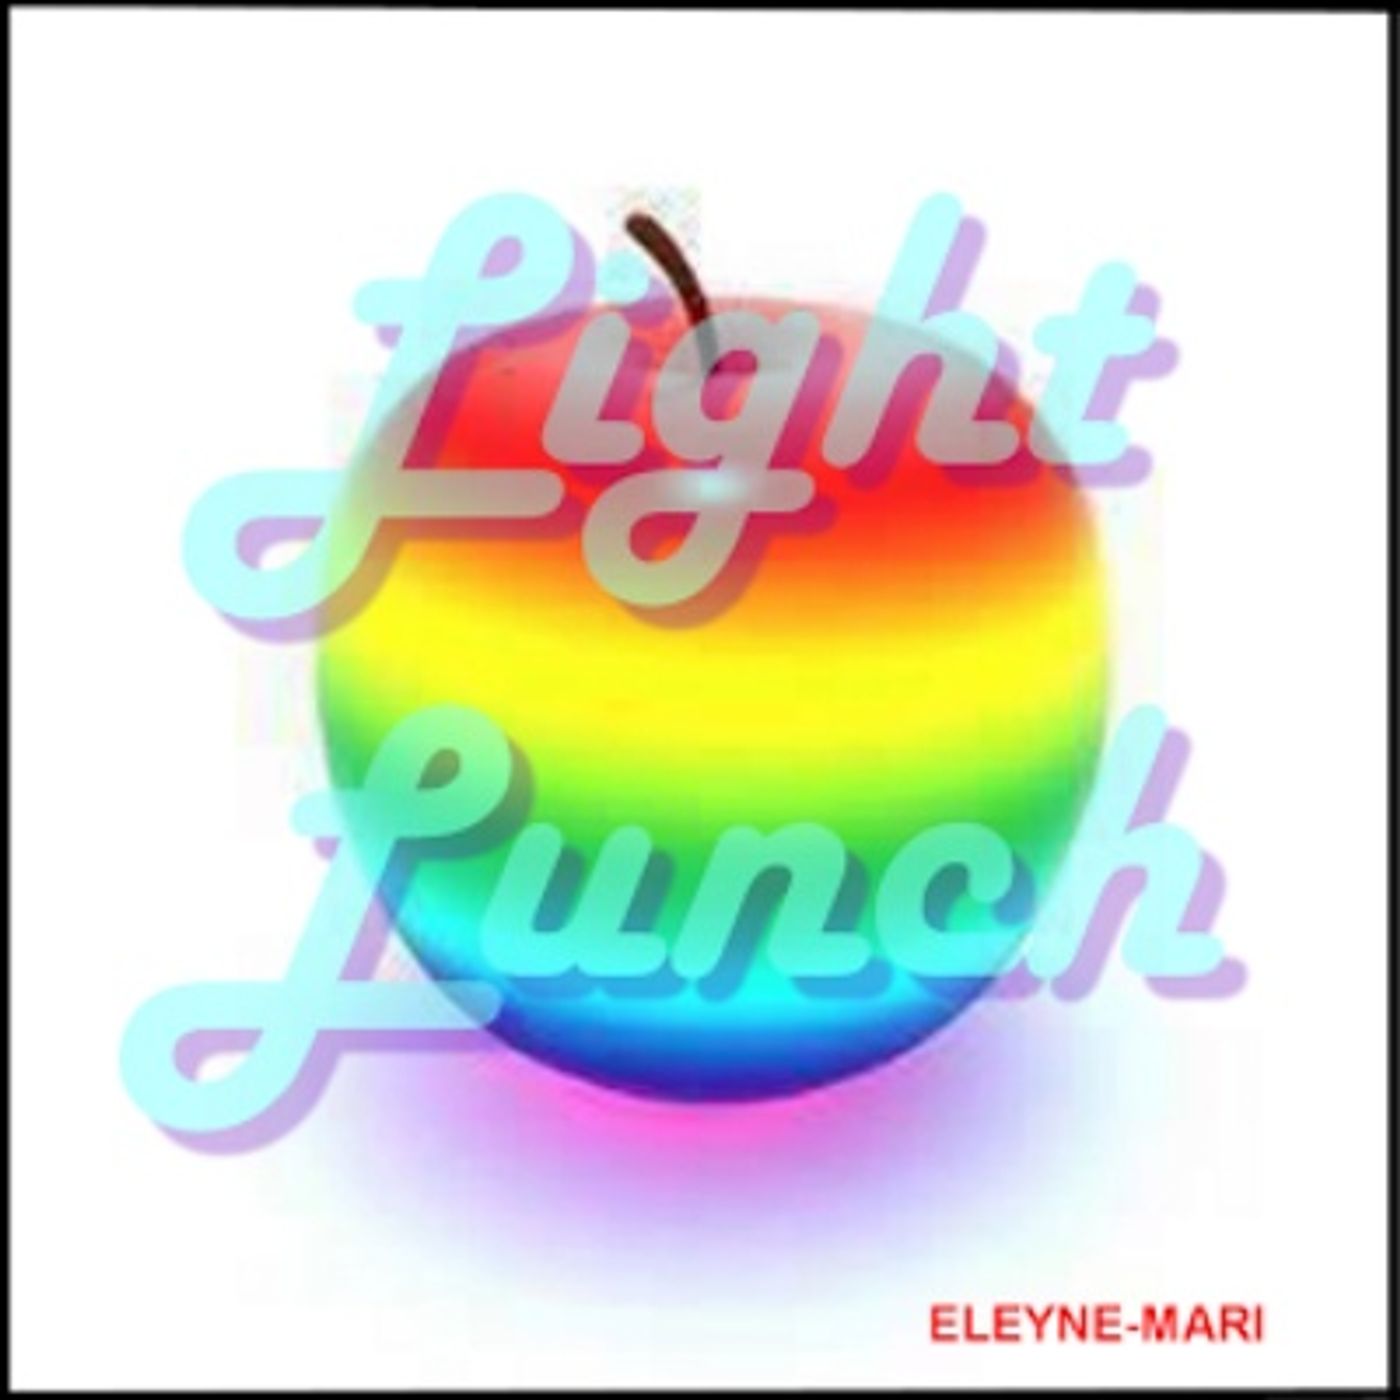 Light Lunch with Eleyne-Mari